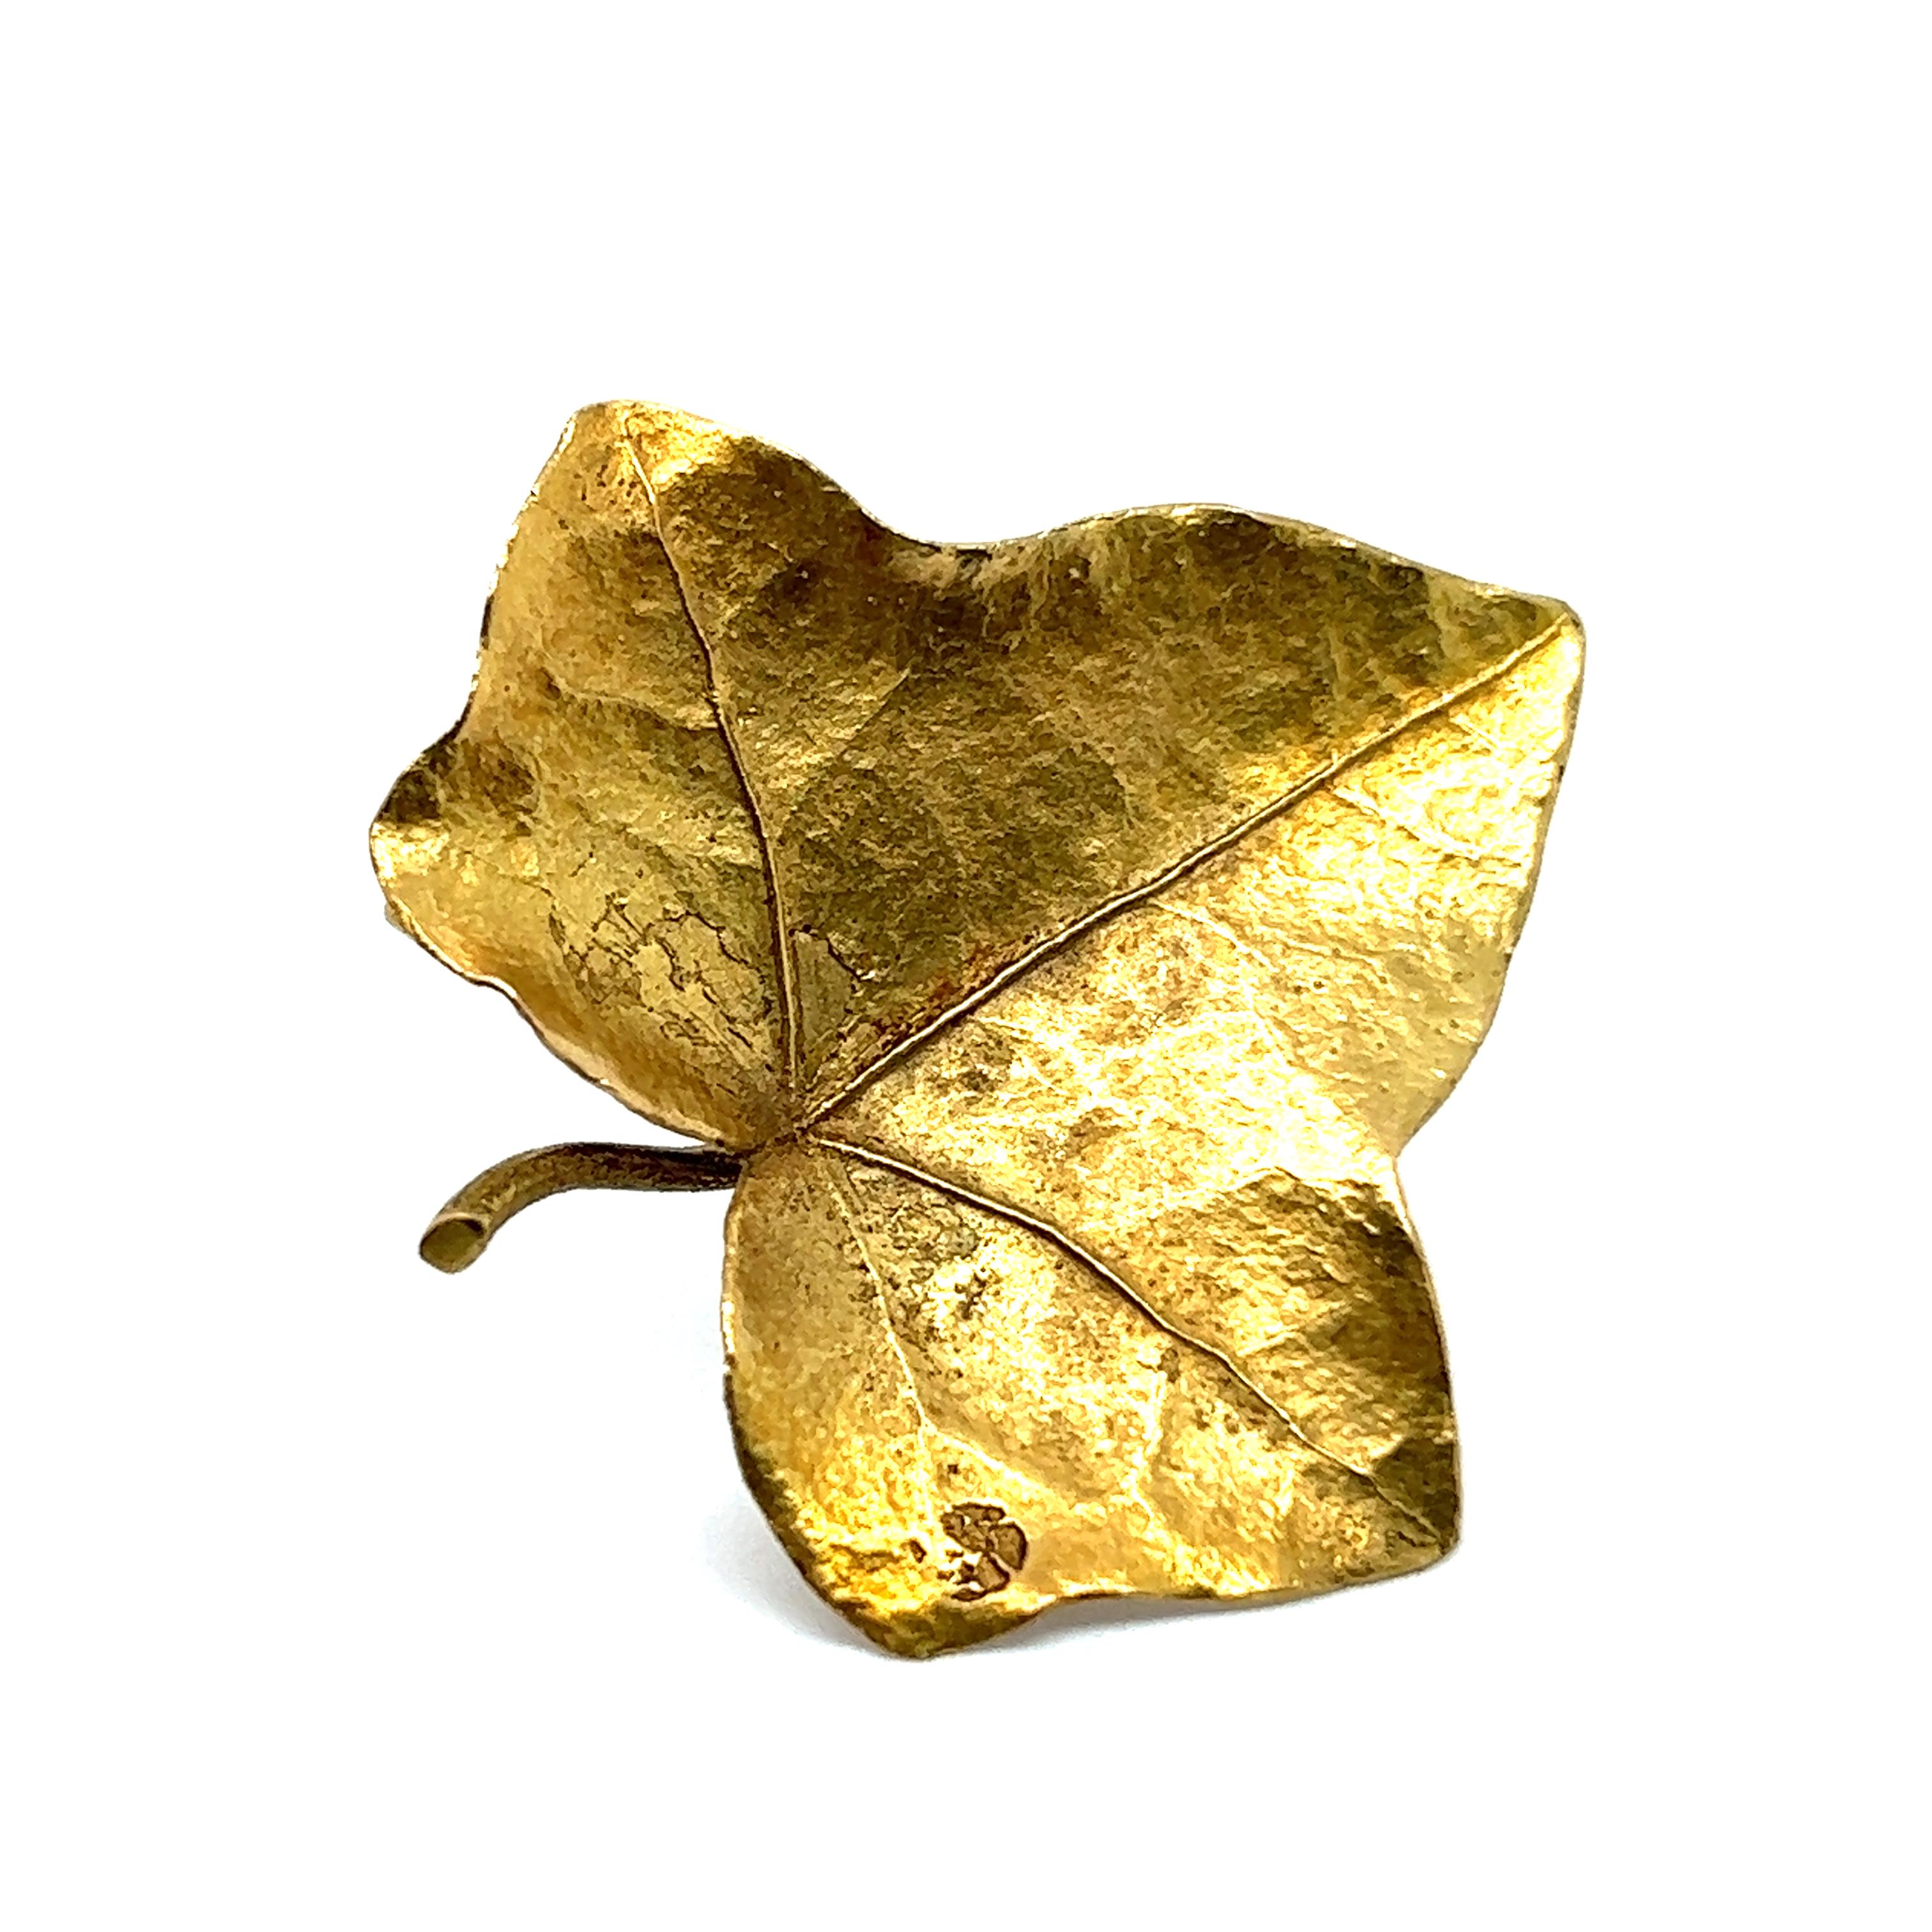 Une exquise broche en forme de feuille de Bucherer, réalisée en or jaune 18 carats. Fondée en 1888, Bucherer allie tradition et innovation, créant des pièces durables qui reflètent le dévouement inébranlable de la marque à l'excellence.

Ce bijou